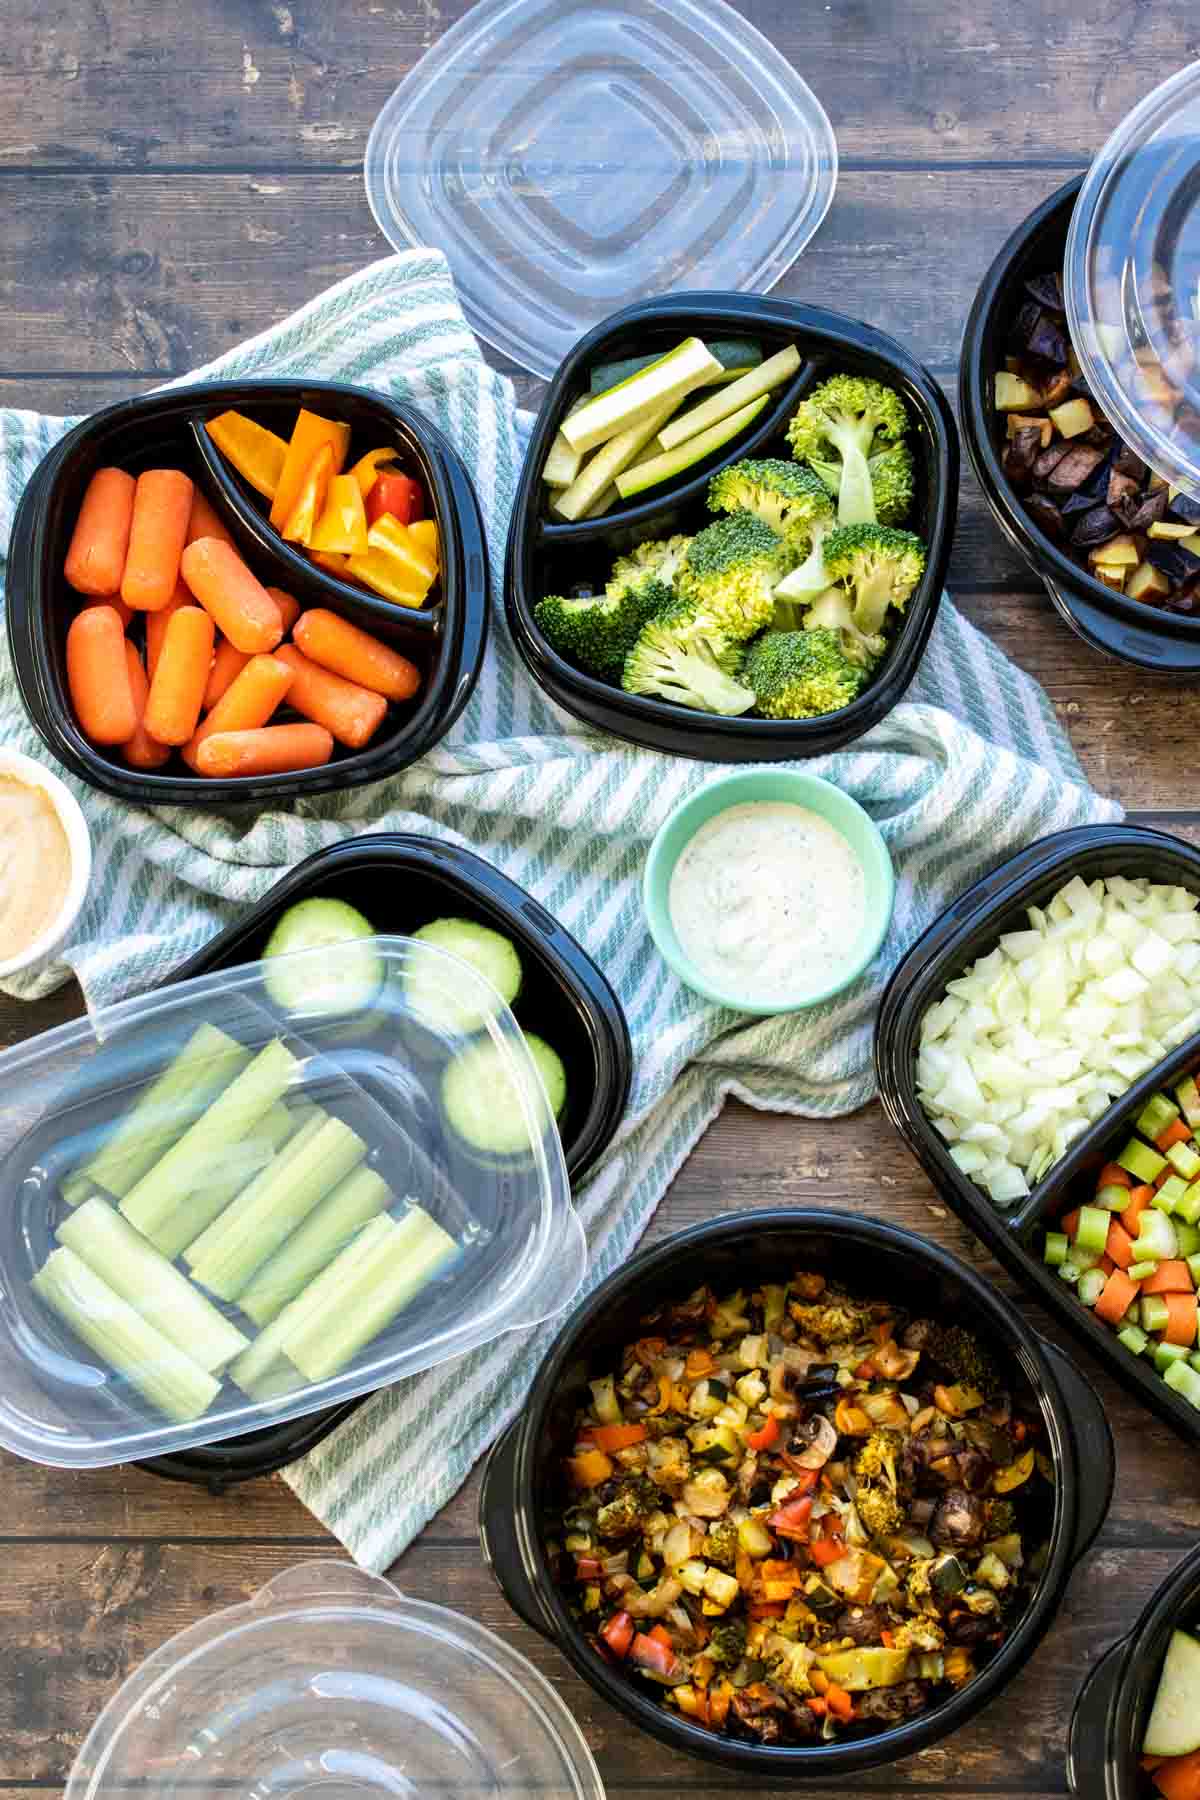 How to Meal Prep Vegetables (& Dinner Ideas) - Veggies Don't Bite